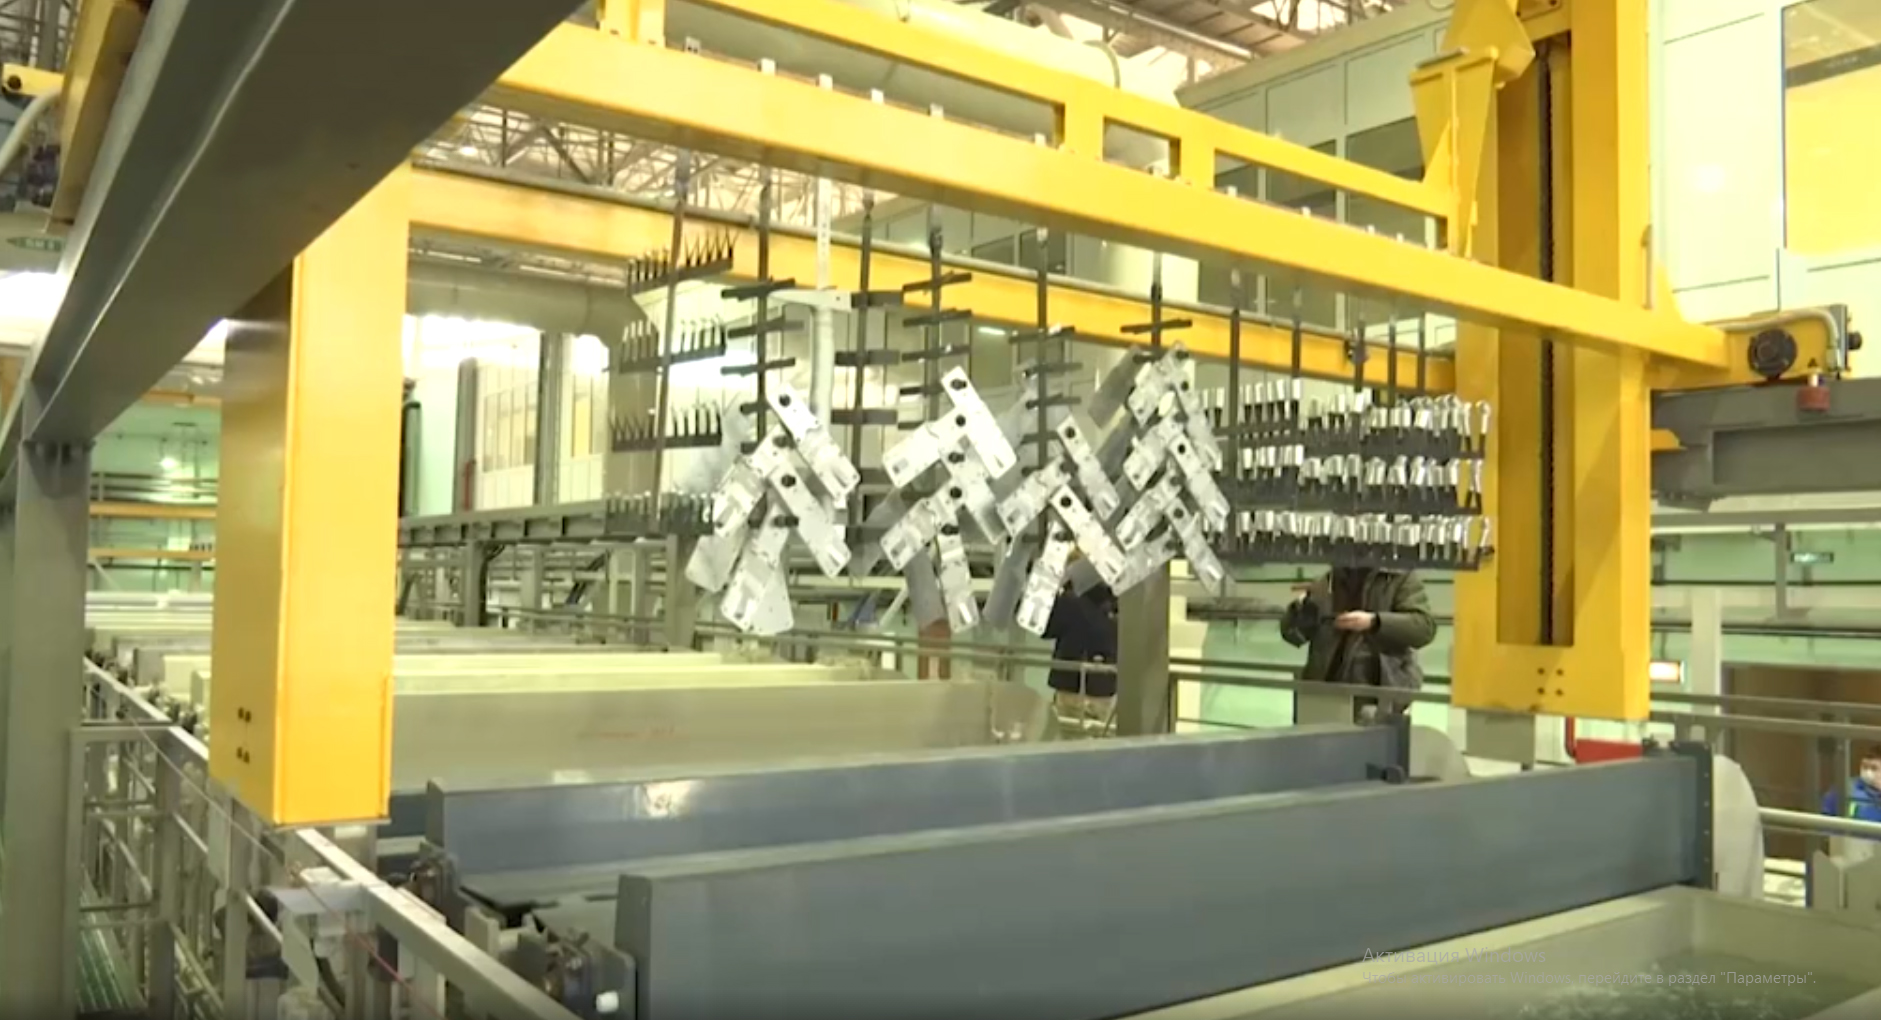 Министр промышленности и торговли России Денис Мантуров в ходе рабочего визита посетил Улан-Удэнский авиационный завод